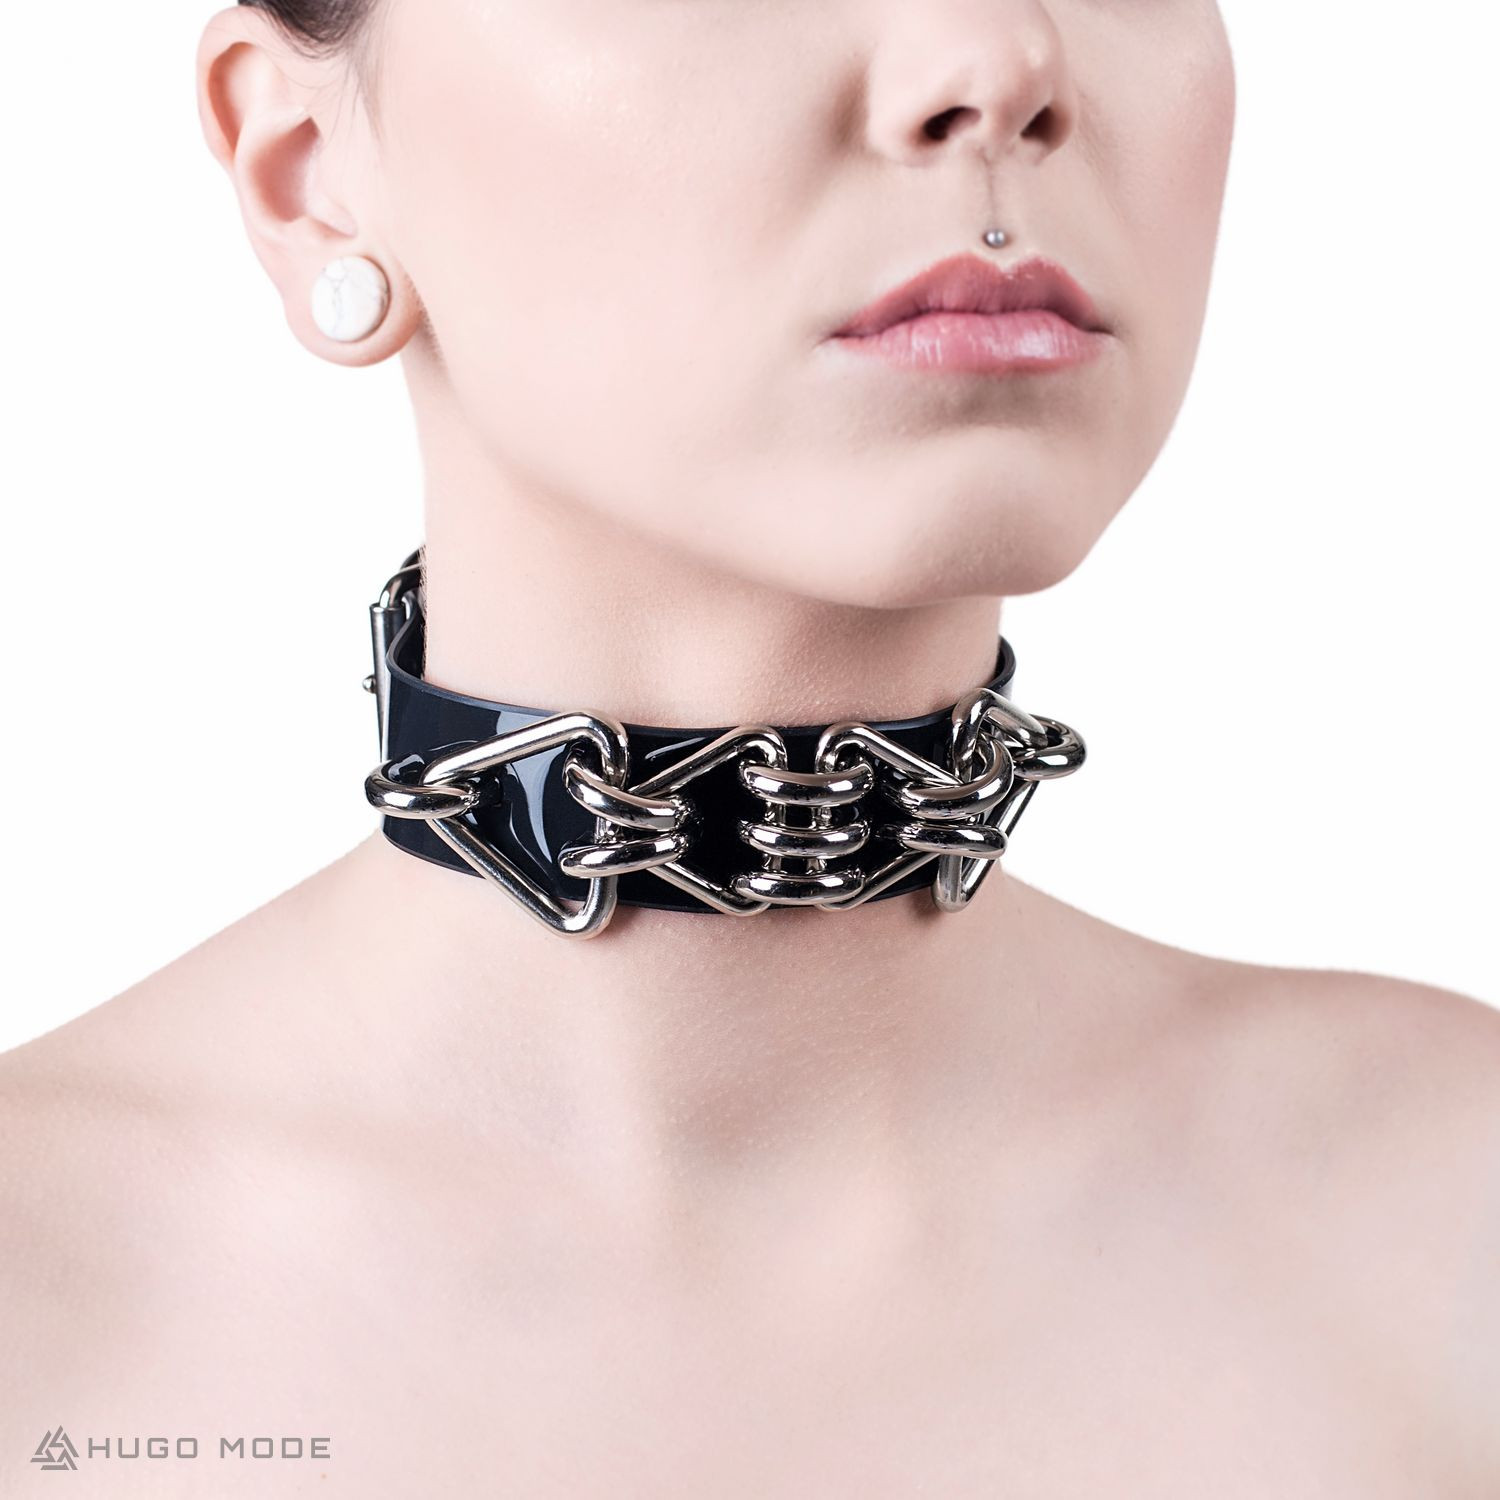 Ein Hals Choker mit ausgeprägten Dekorationen aus Metalldreiecken.